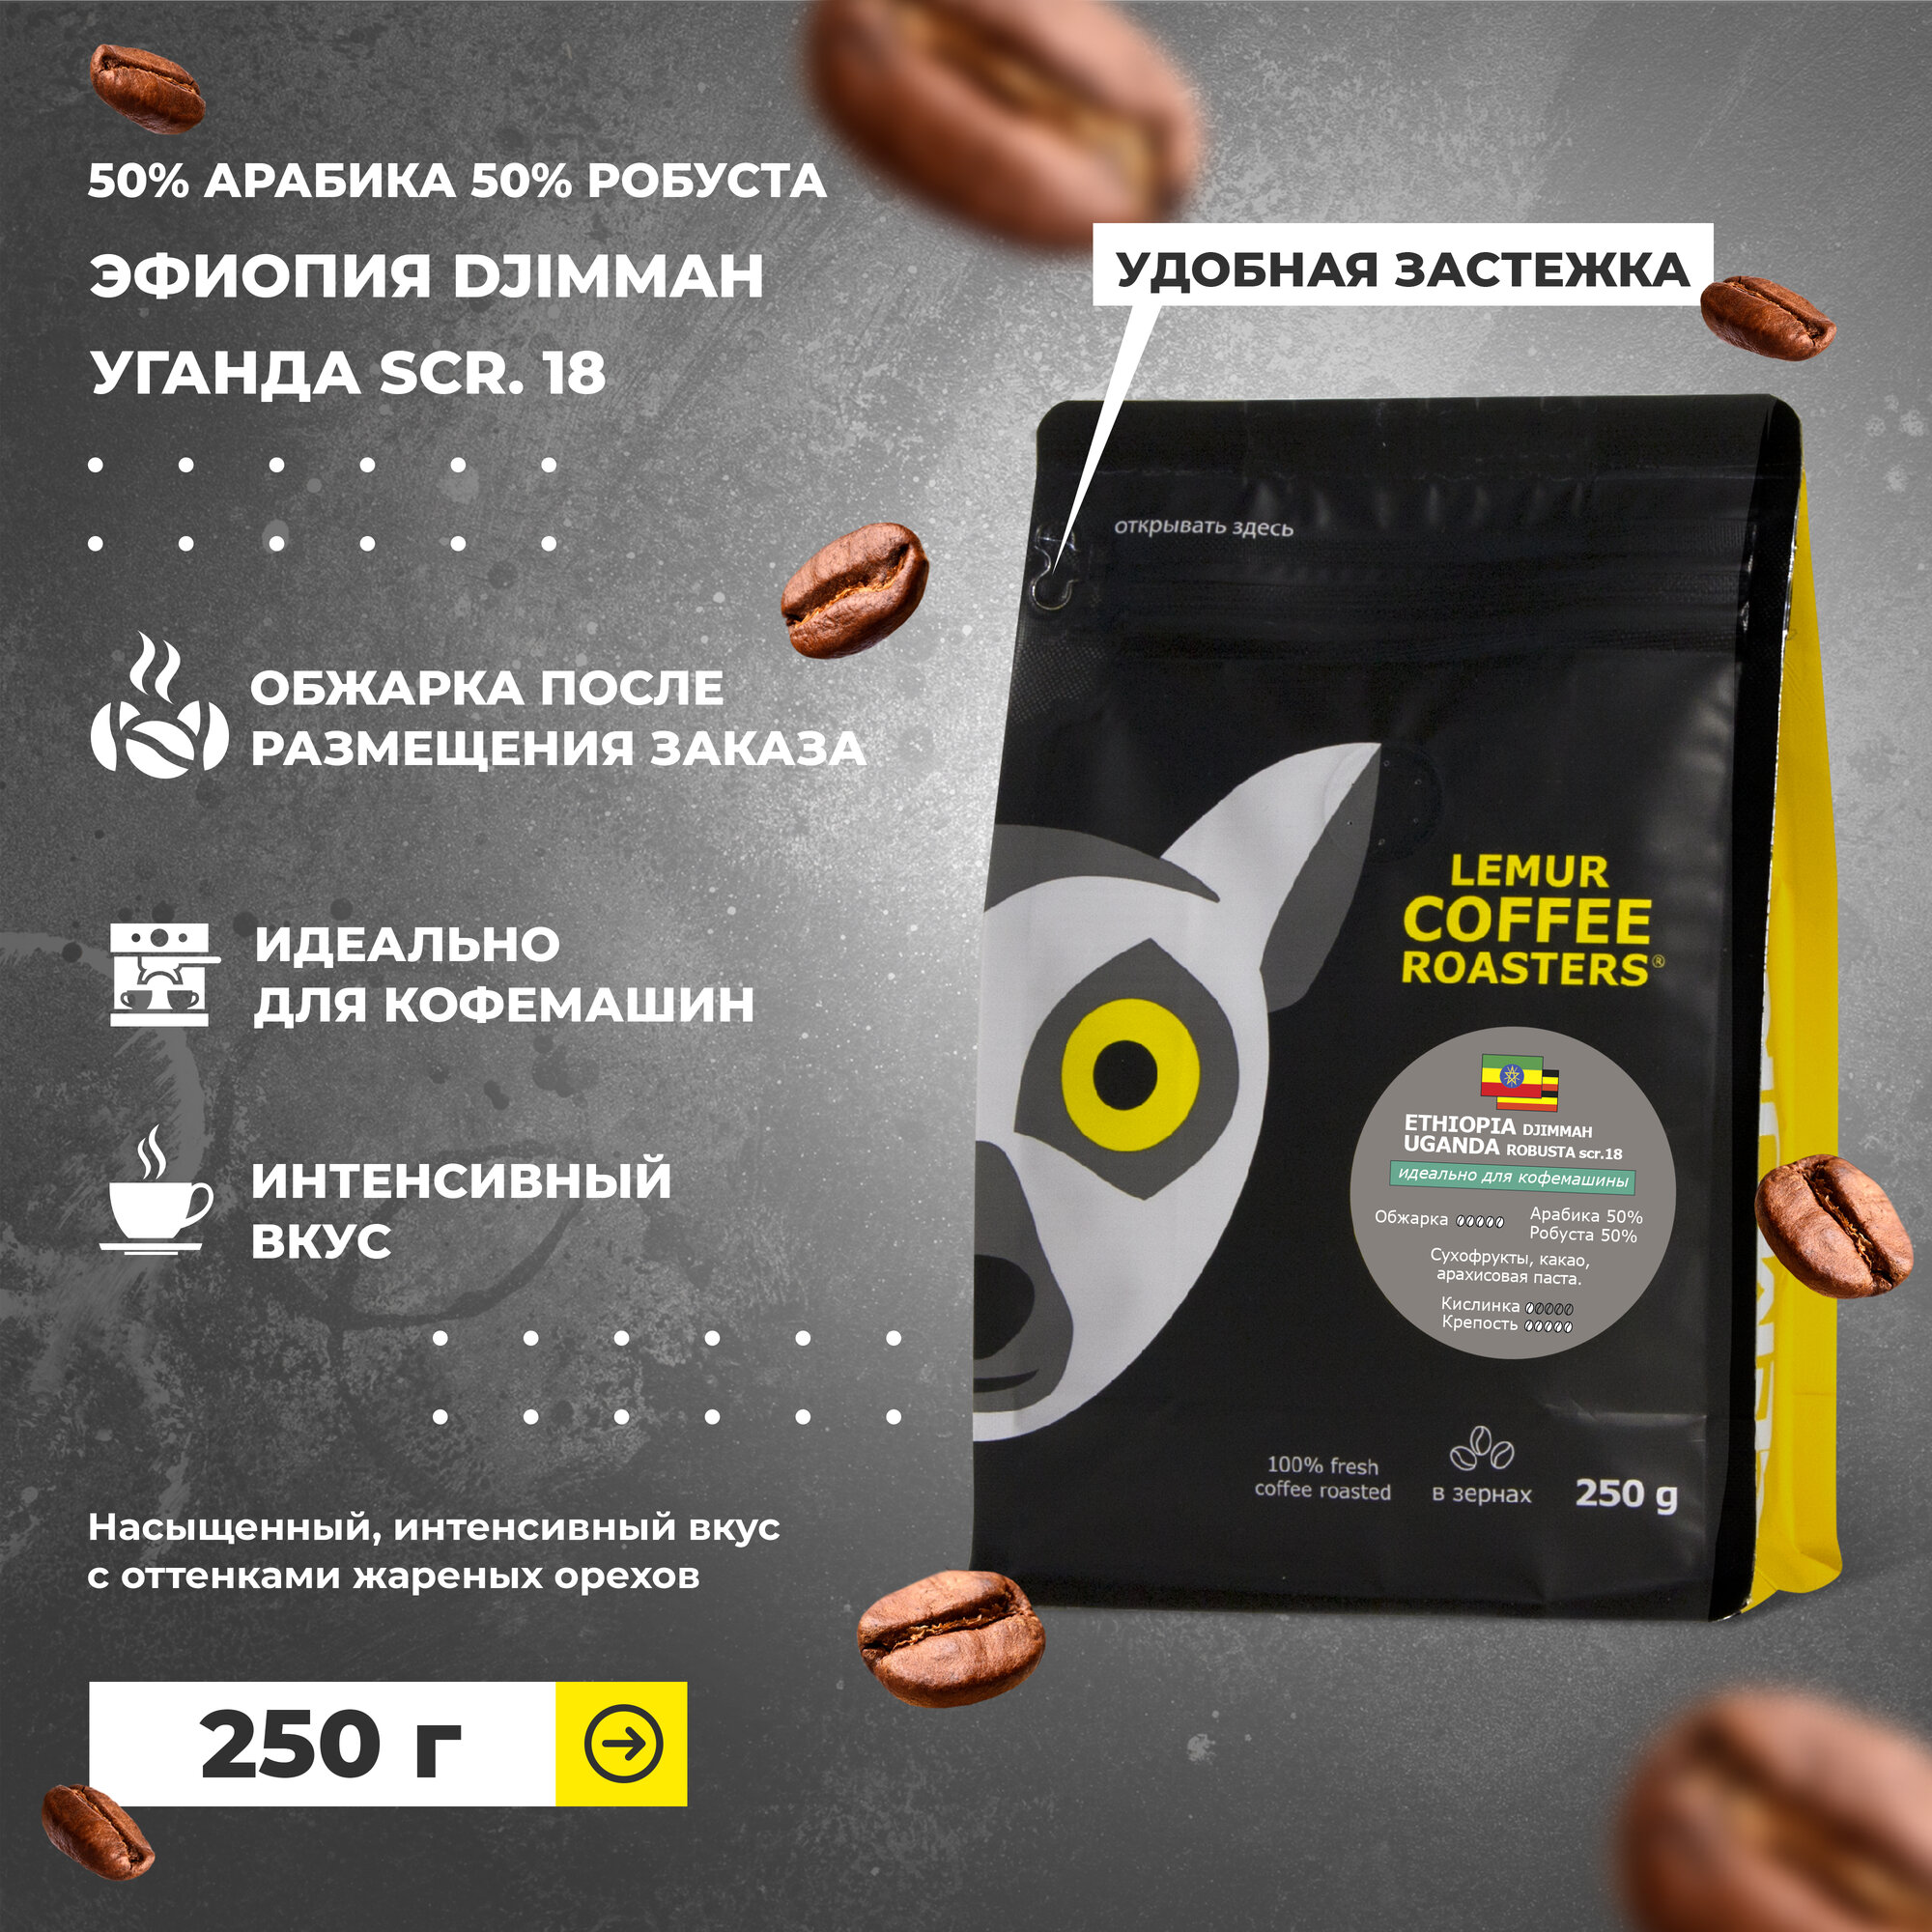 Кофе в зернах смесь эфиопия / уганда 50% арабики 50% робусты ETHIOPIA UGANGA MARKET, 250г